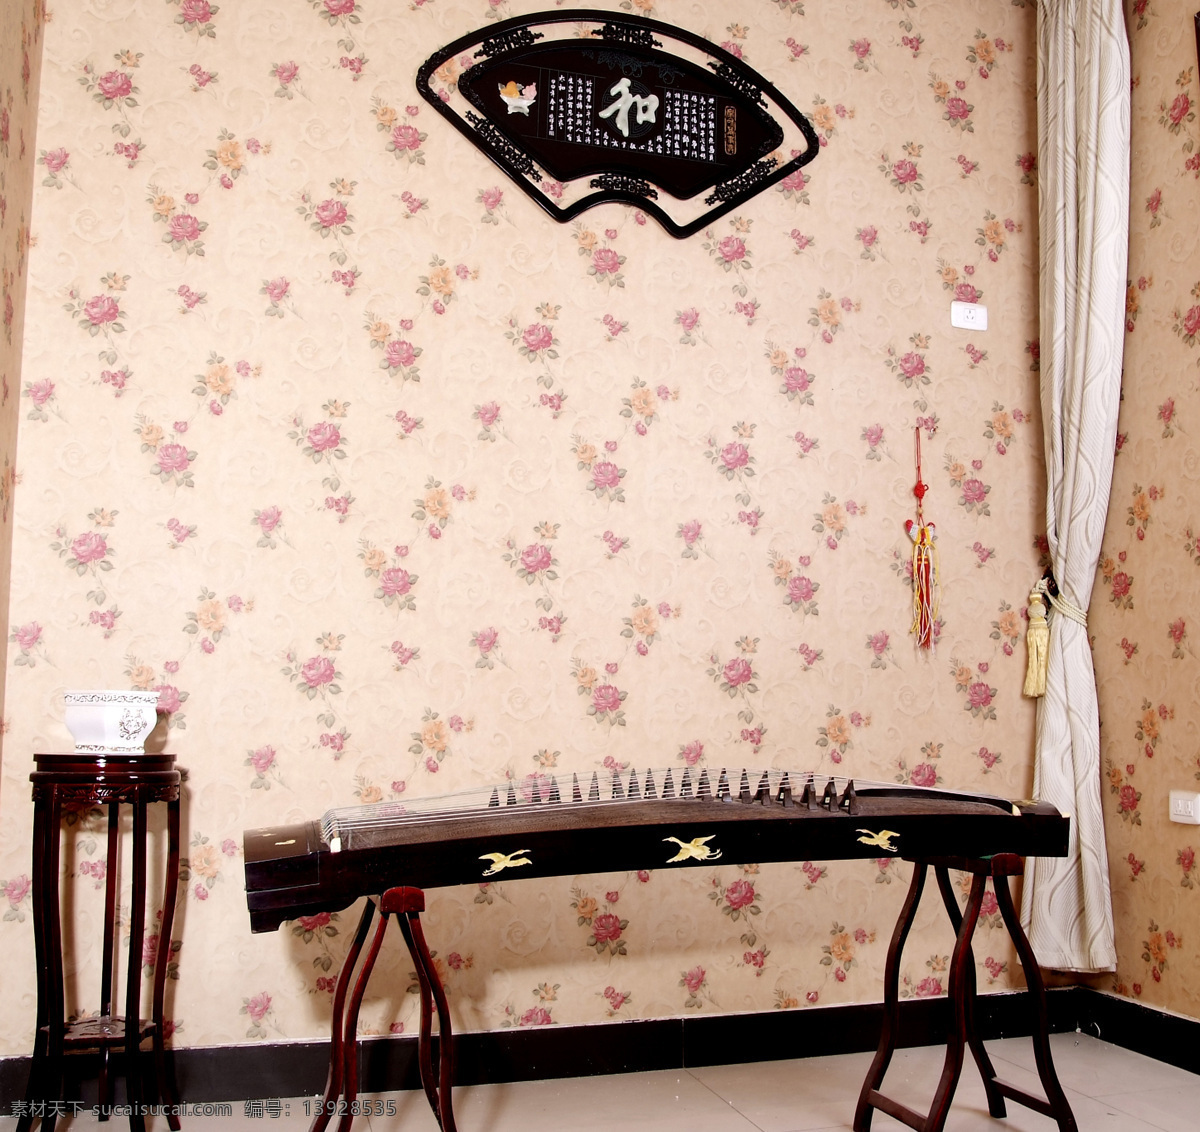 古典 古香古色 古筝 建筑园林 玫瑰花纹 墙纸 摄影图库 情景式 室内摄影 家居装饰素材 壁纸墙画壁纸